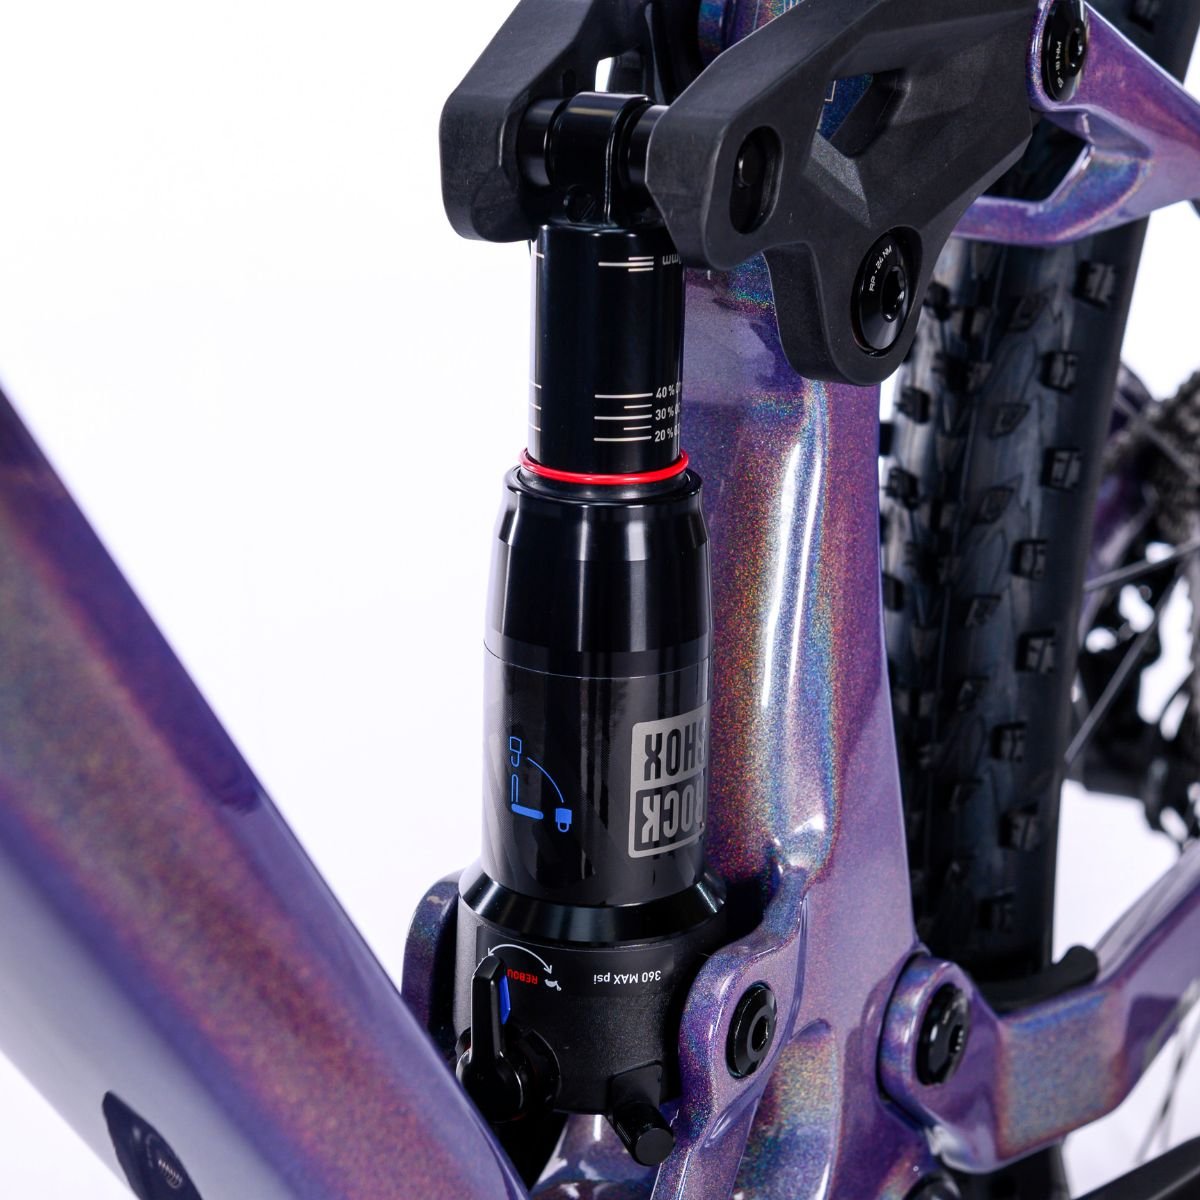 Bicicleta Full Sense Invictus Sport Carbono Shimano Cues:roxo+preto/19 - 7